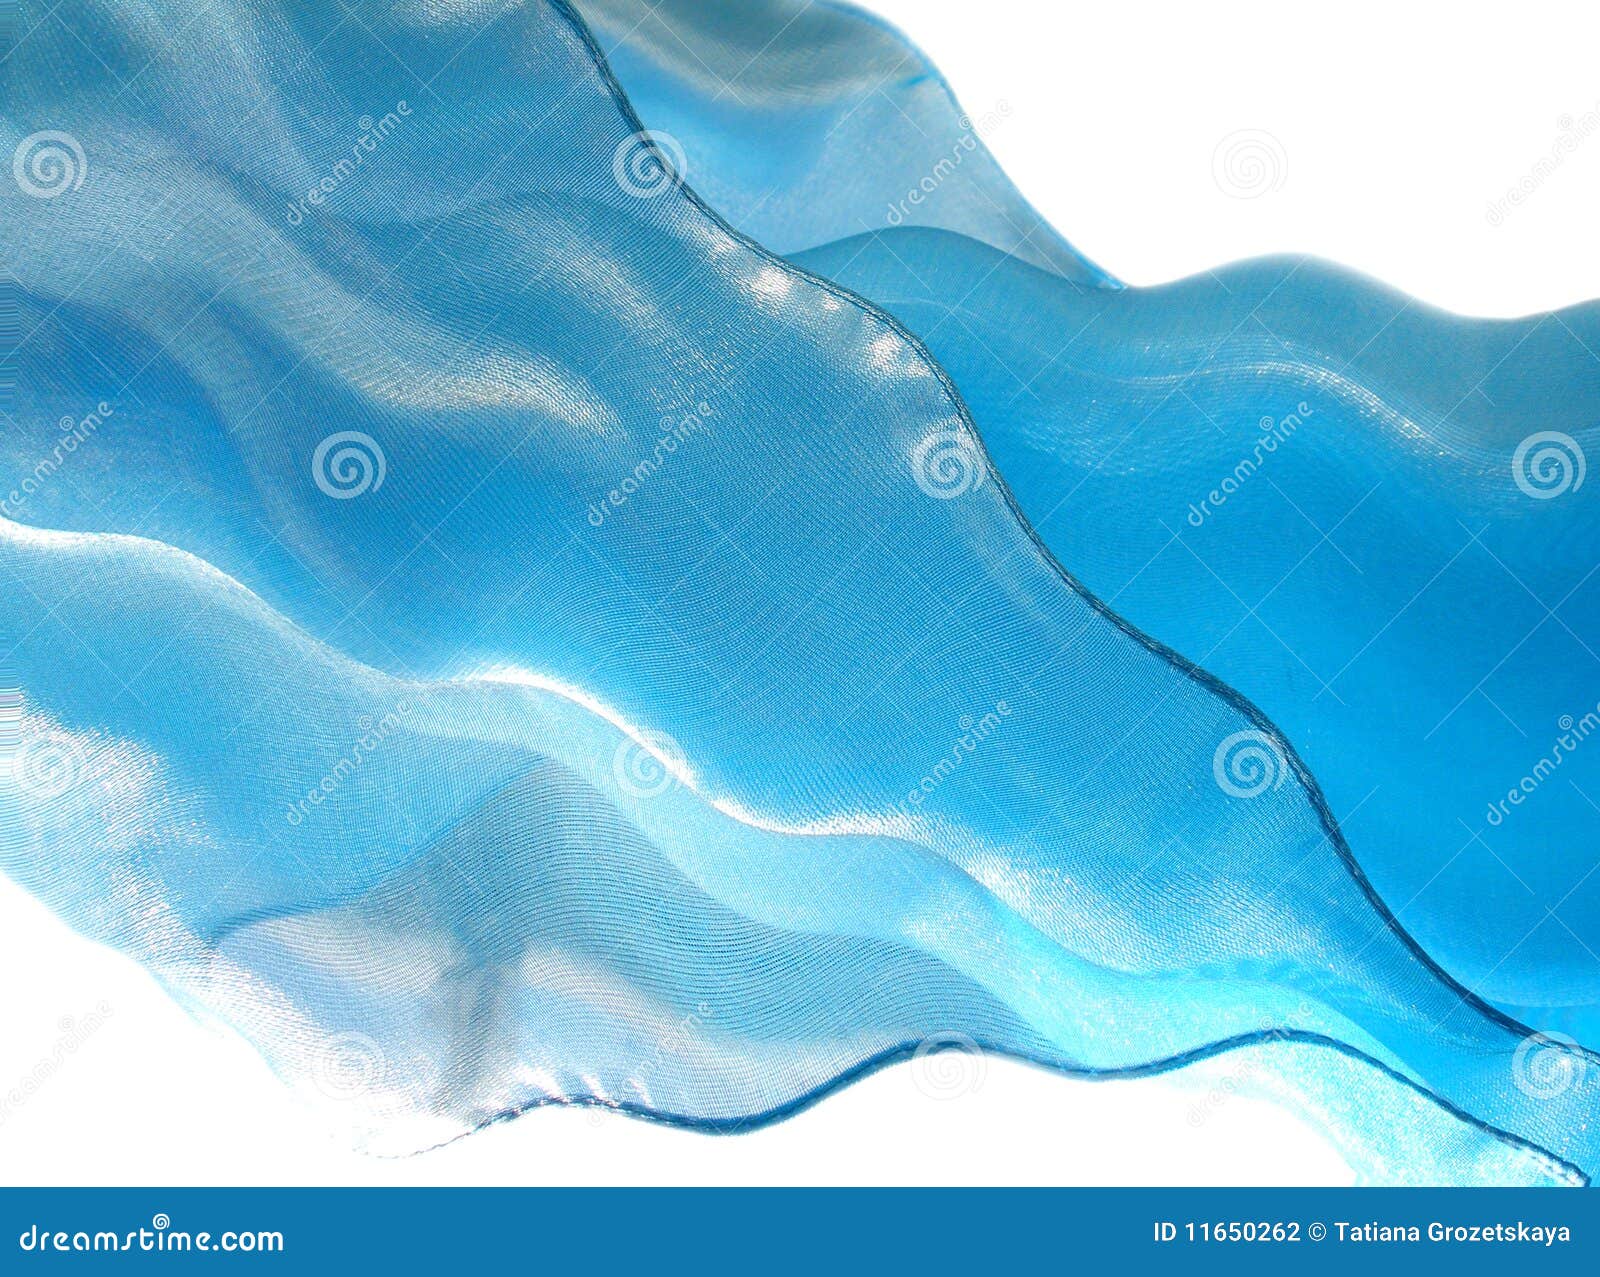 blue flying silk